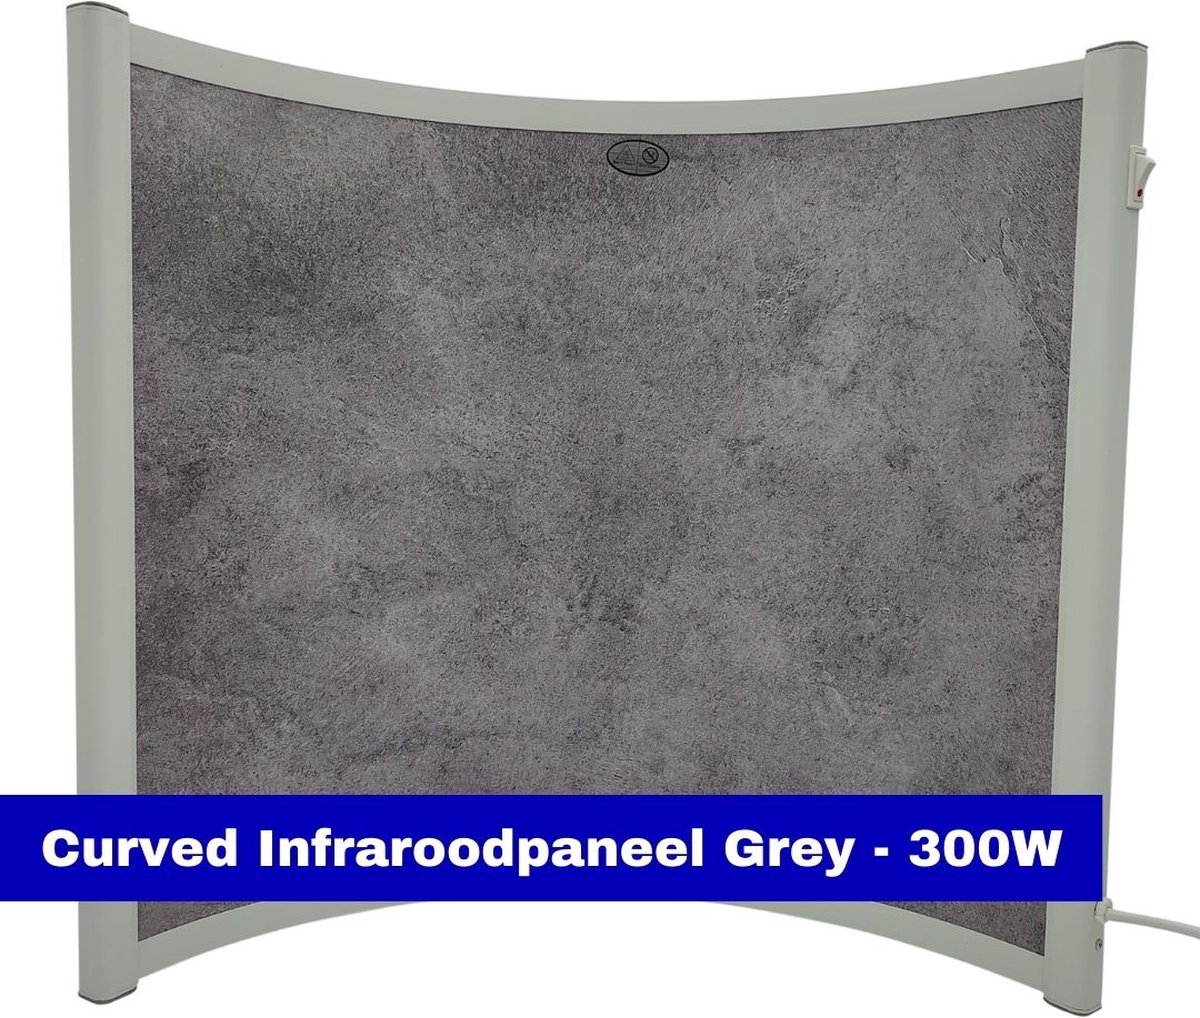 VH Verplaatsbaar infraroodpaneel - Curved Stone - 300W - 55x52x20cm - 230V